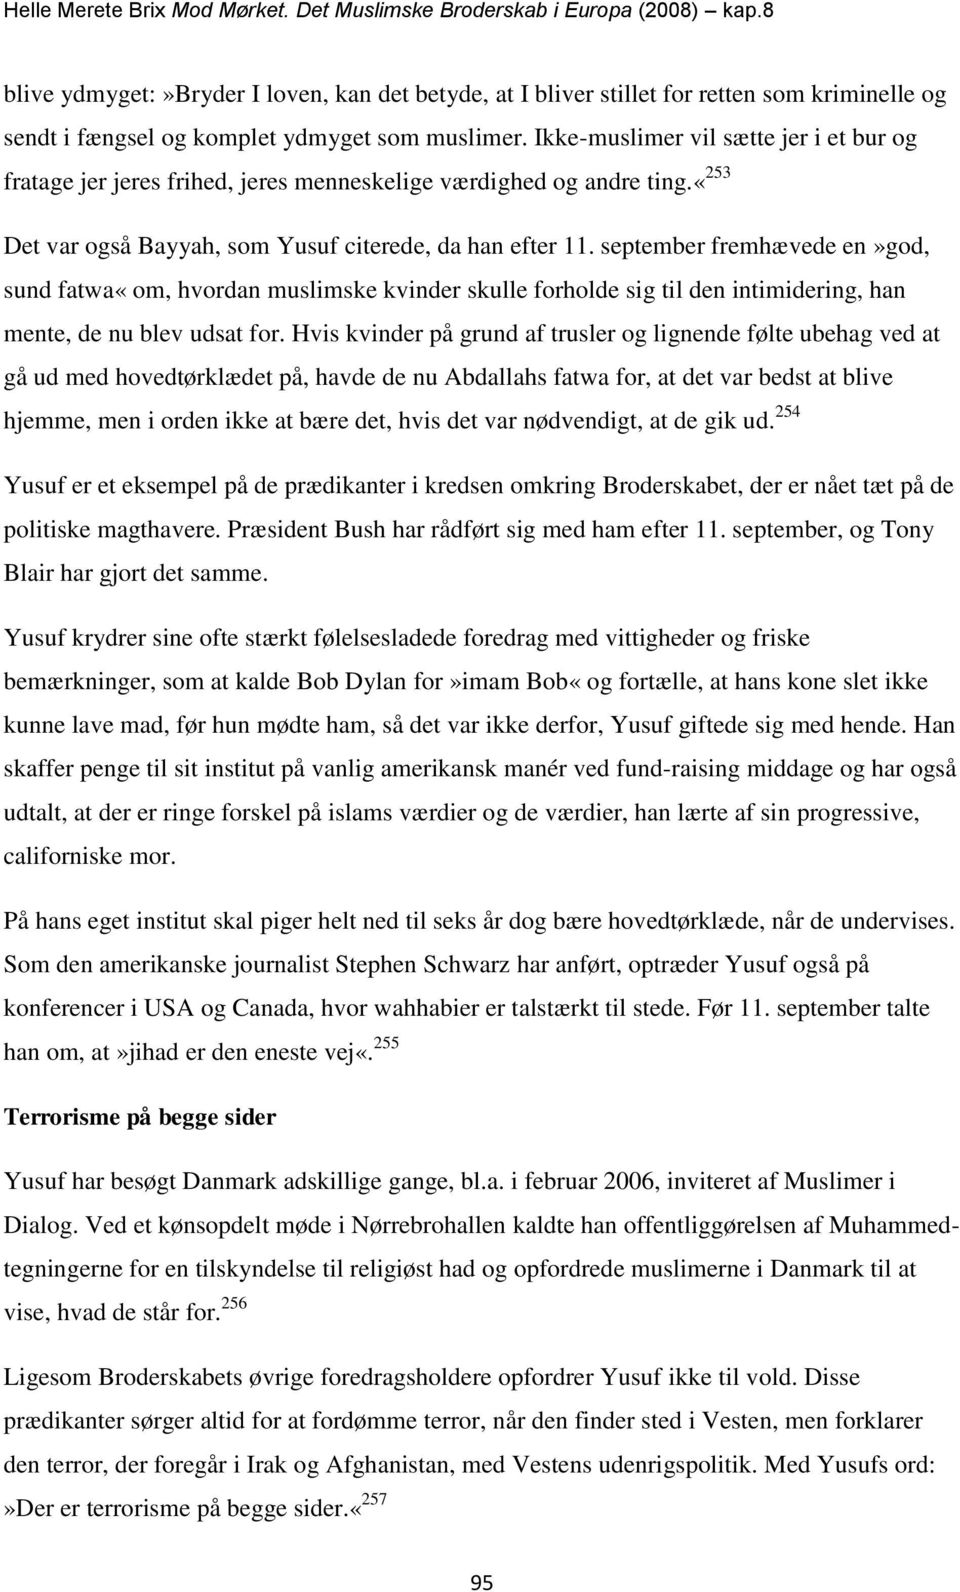 Helle Merete Brix Mod Mørket. Det Muslimske Broderskab i Europa (2008)  kap.8 - PDF Free Download